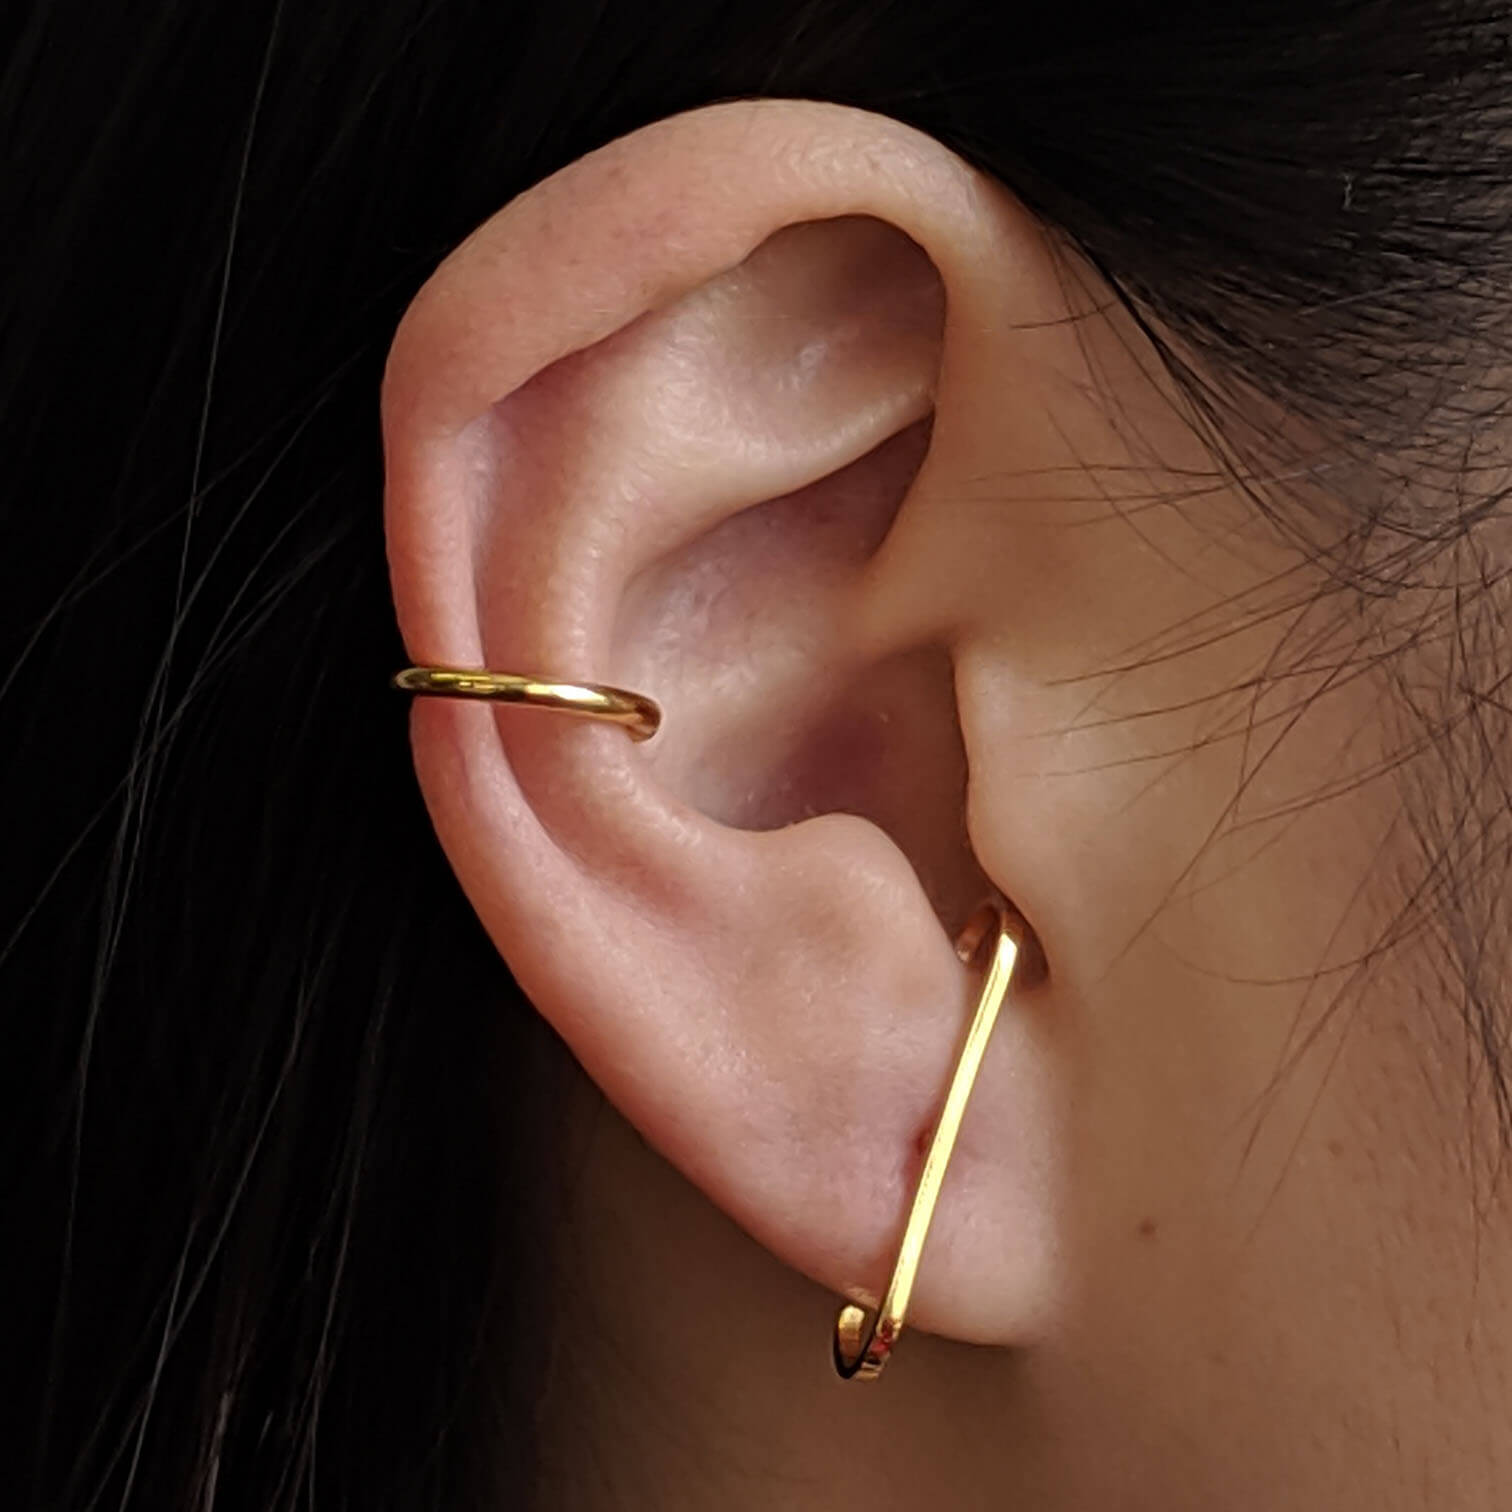 Earclamp for Men Man Earring Auricle Earring Ear Cuff for 